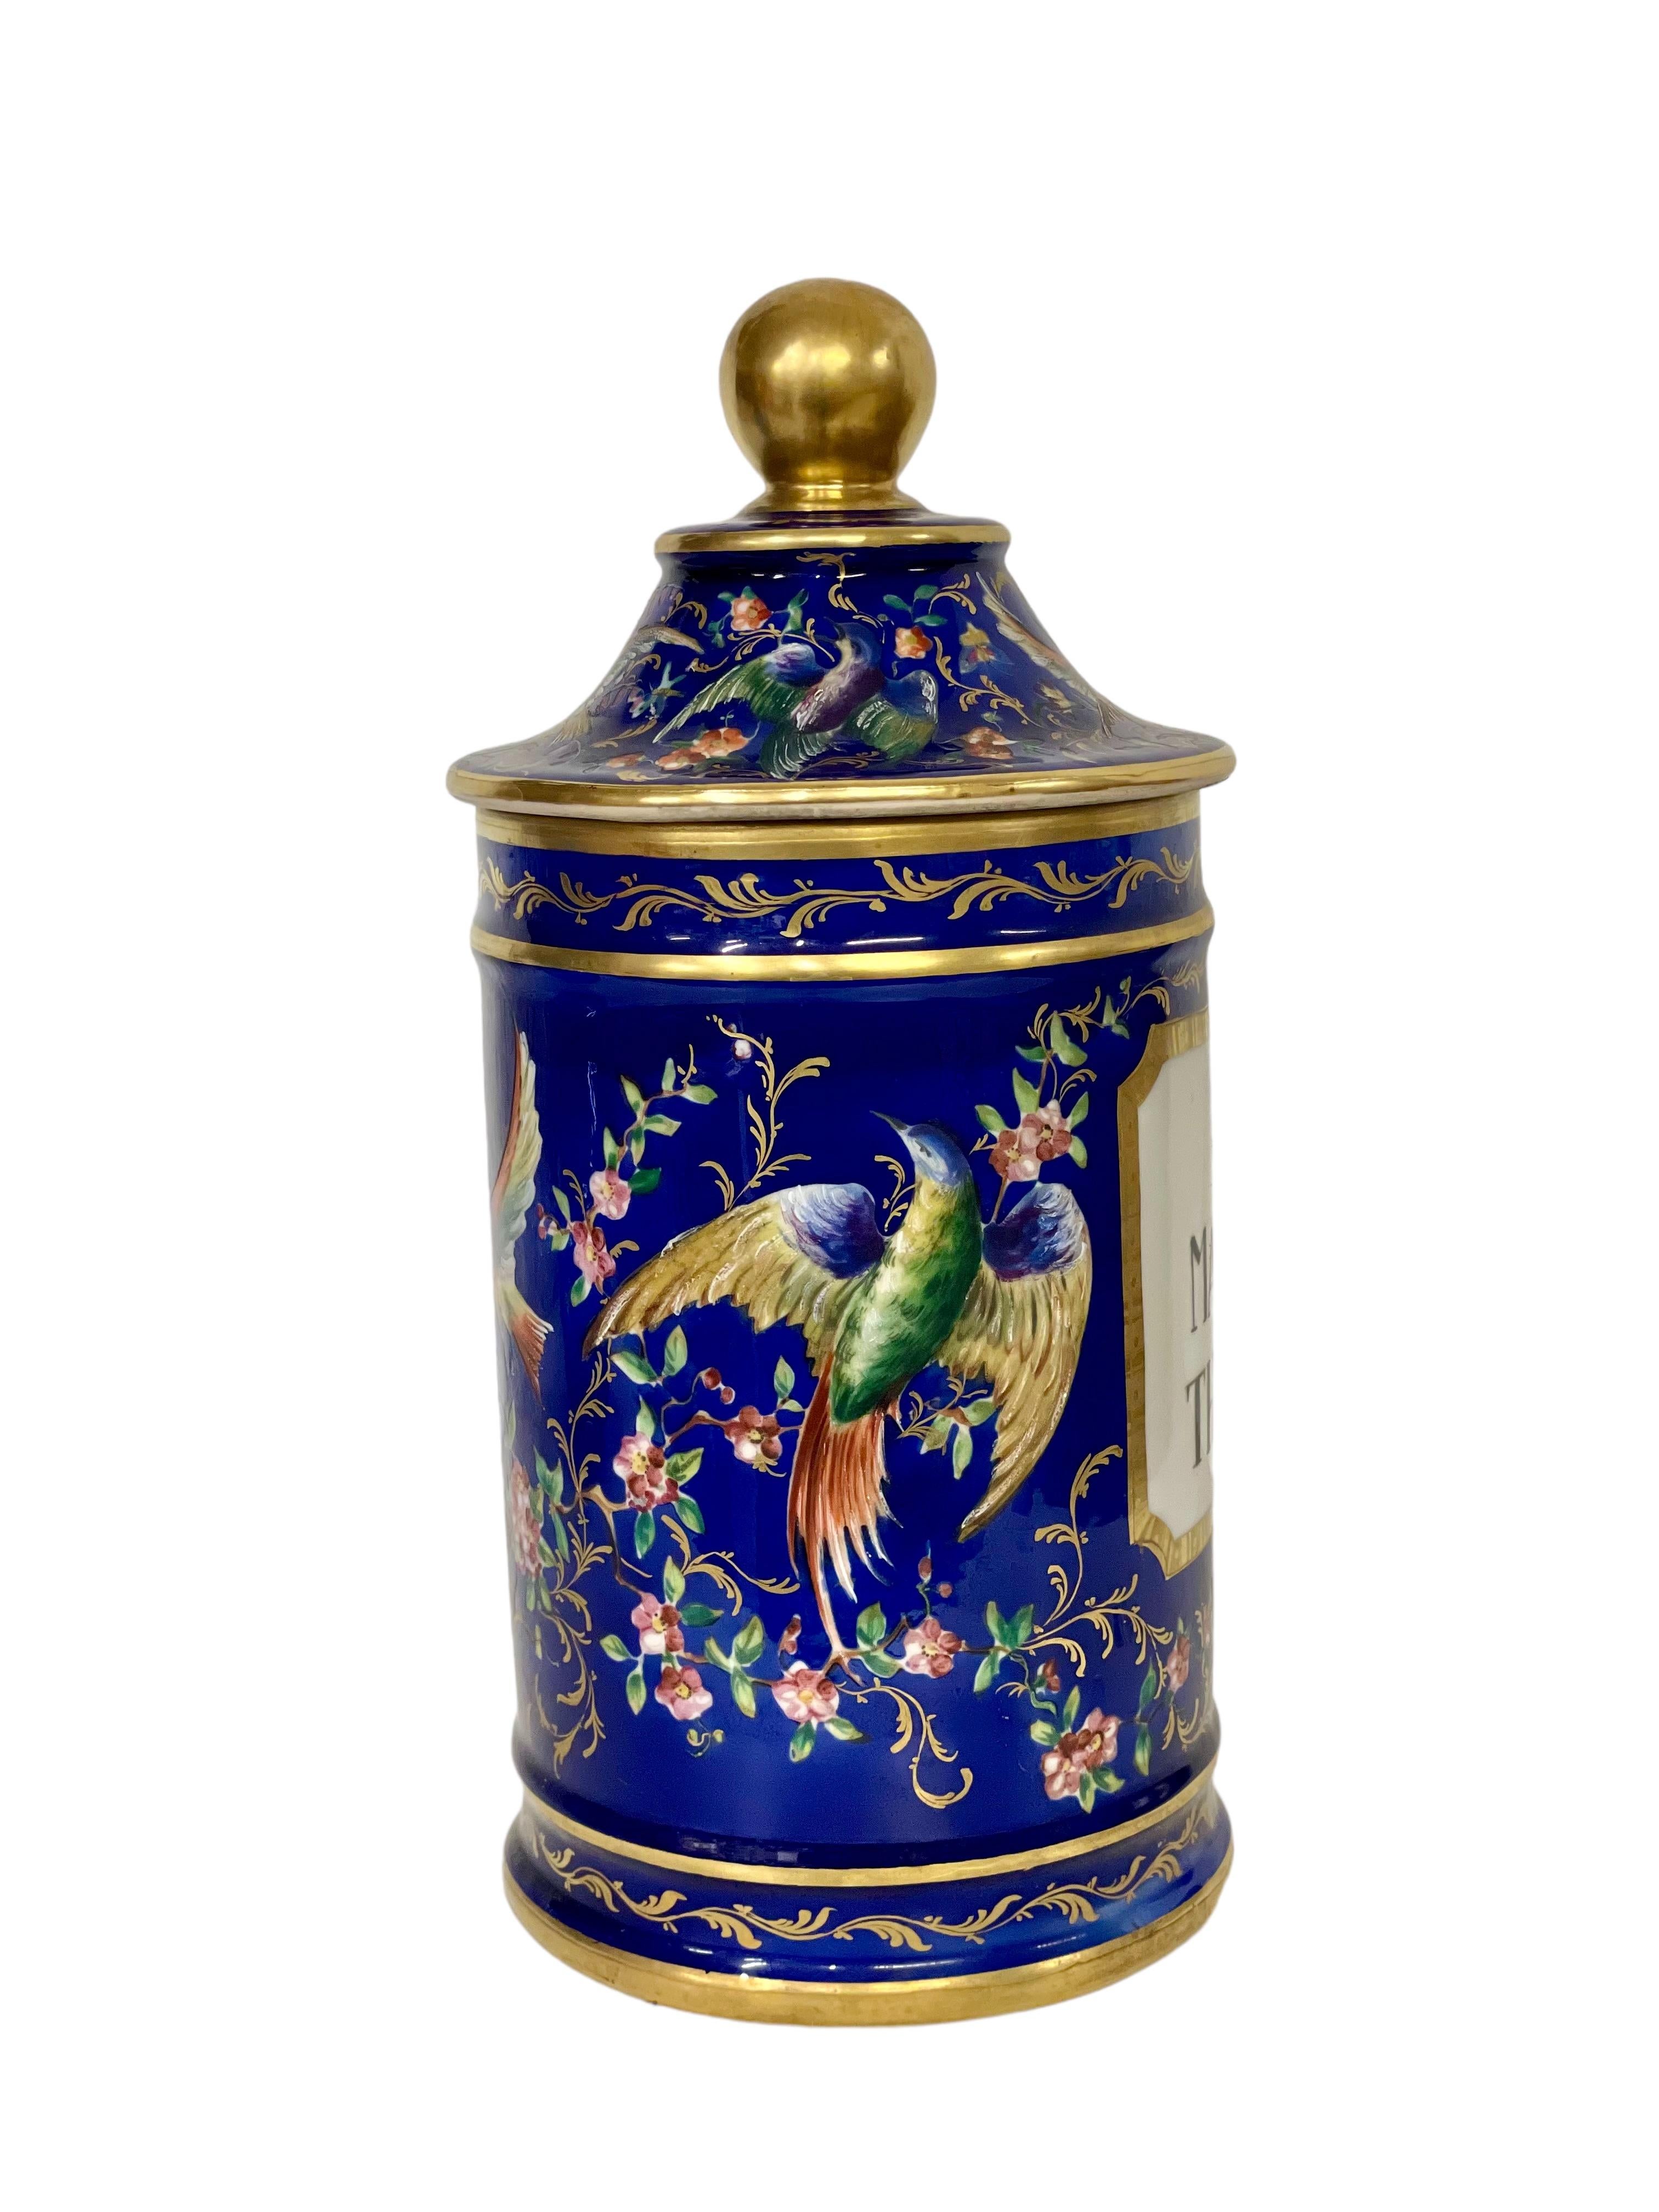 Ein wunderschönes Empire-Porzellan-Deckelglas aus dem 19. Jahrhundert. Das üppige Emaille-Motiv mit exotischen Vögeln und Schmetterlingen auf kobaltblauem Hintergrund ist großzügig mit vergoldeten Ornamenten verziert. Dieses große Gefäß ist mit dem